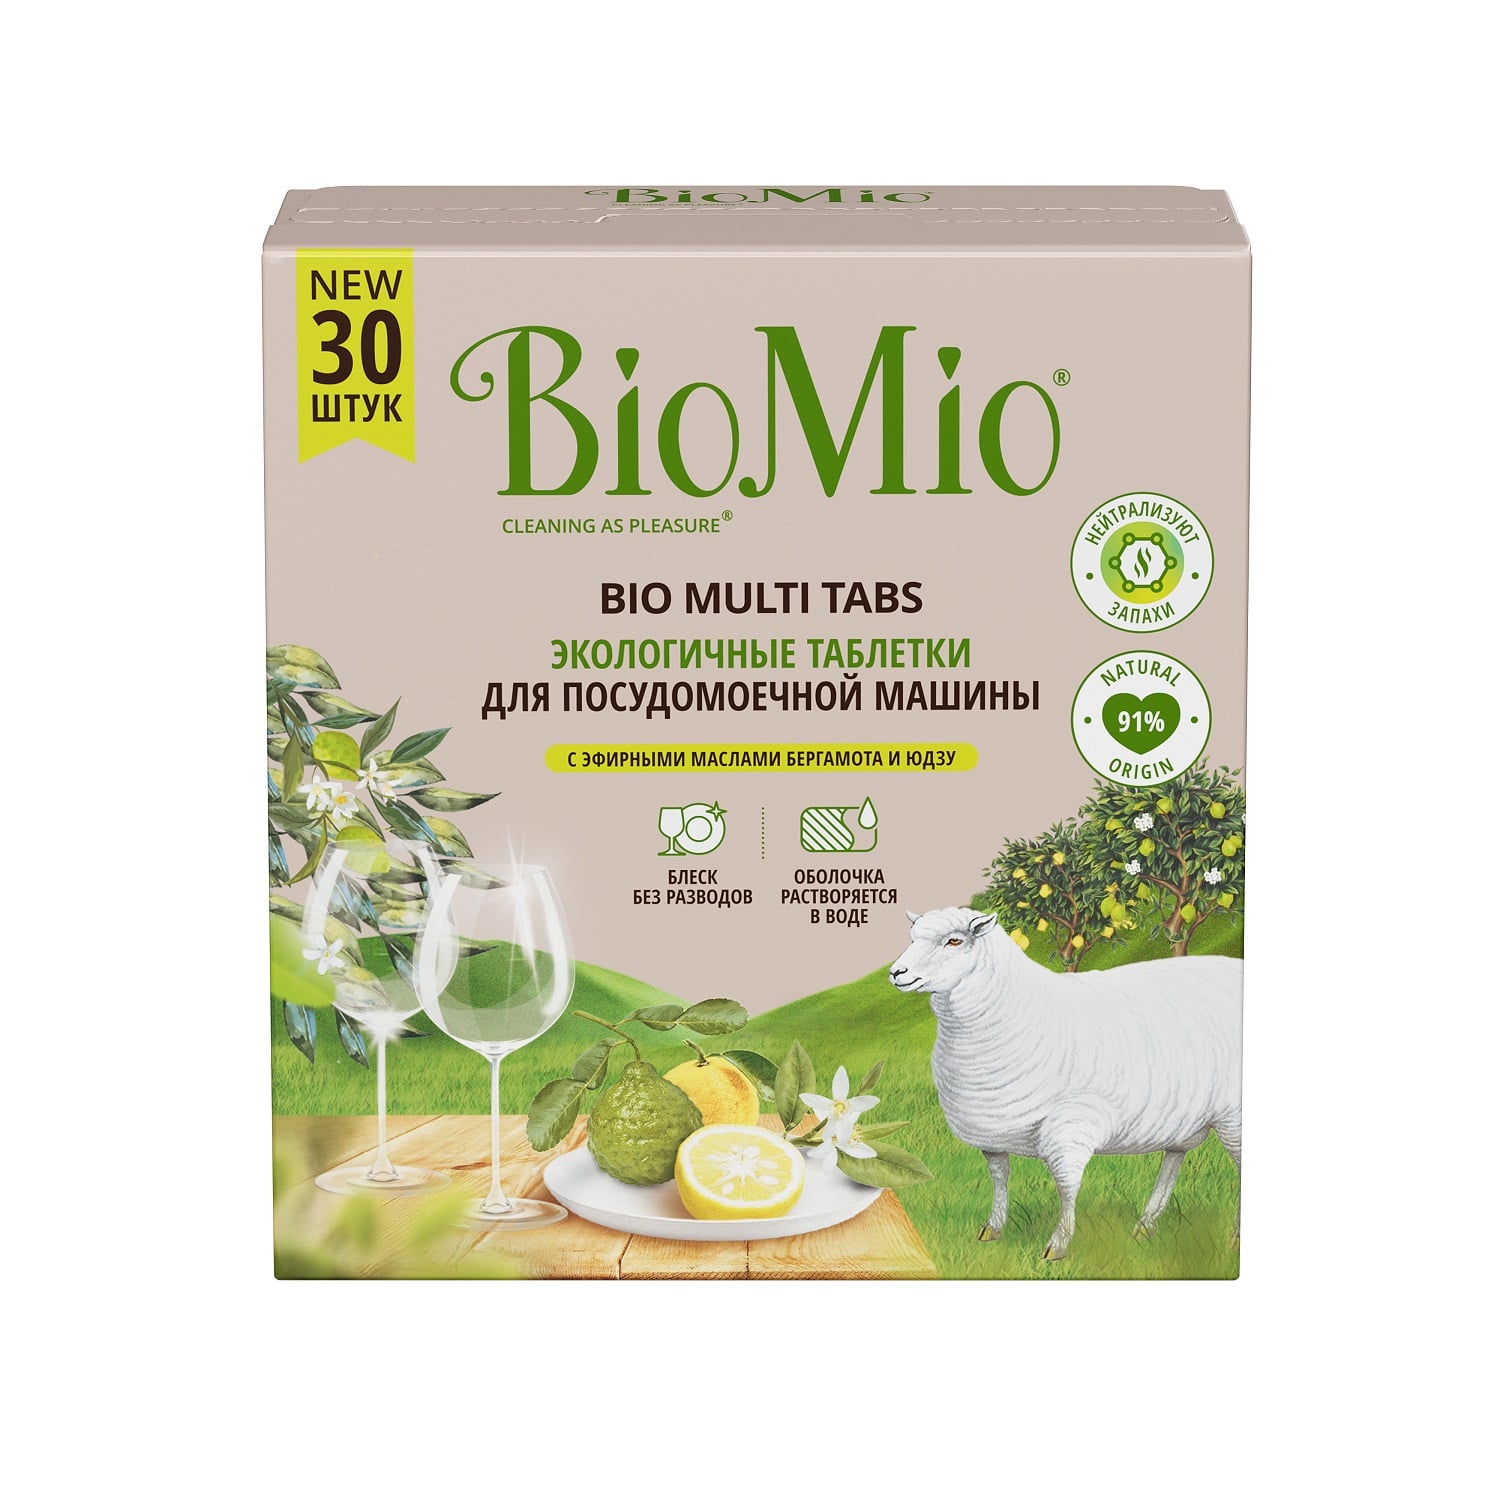 BioMio Таблетки для посудомоечной машины Bio Multi Tabs с эфирными маслами бергамота и юдзу, 30 шт (BioMio, Посуда)